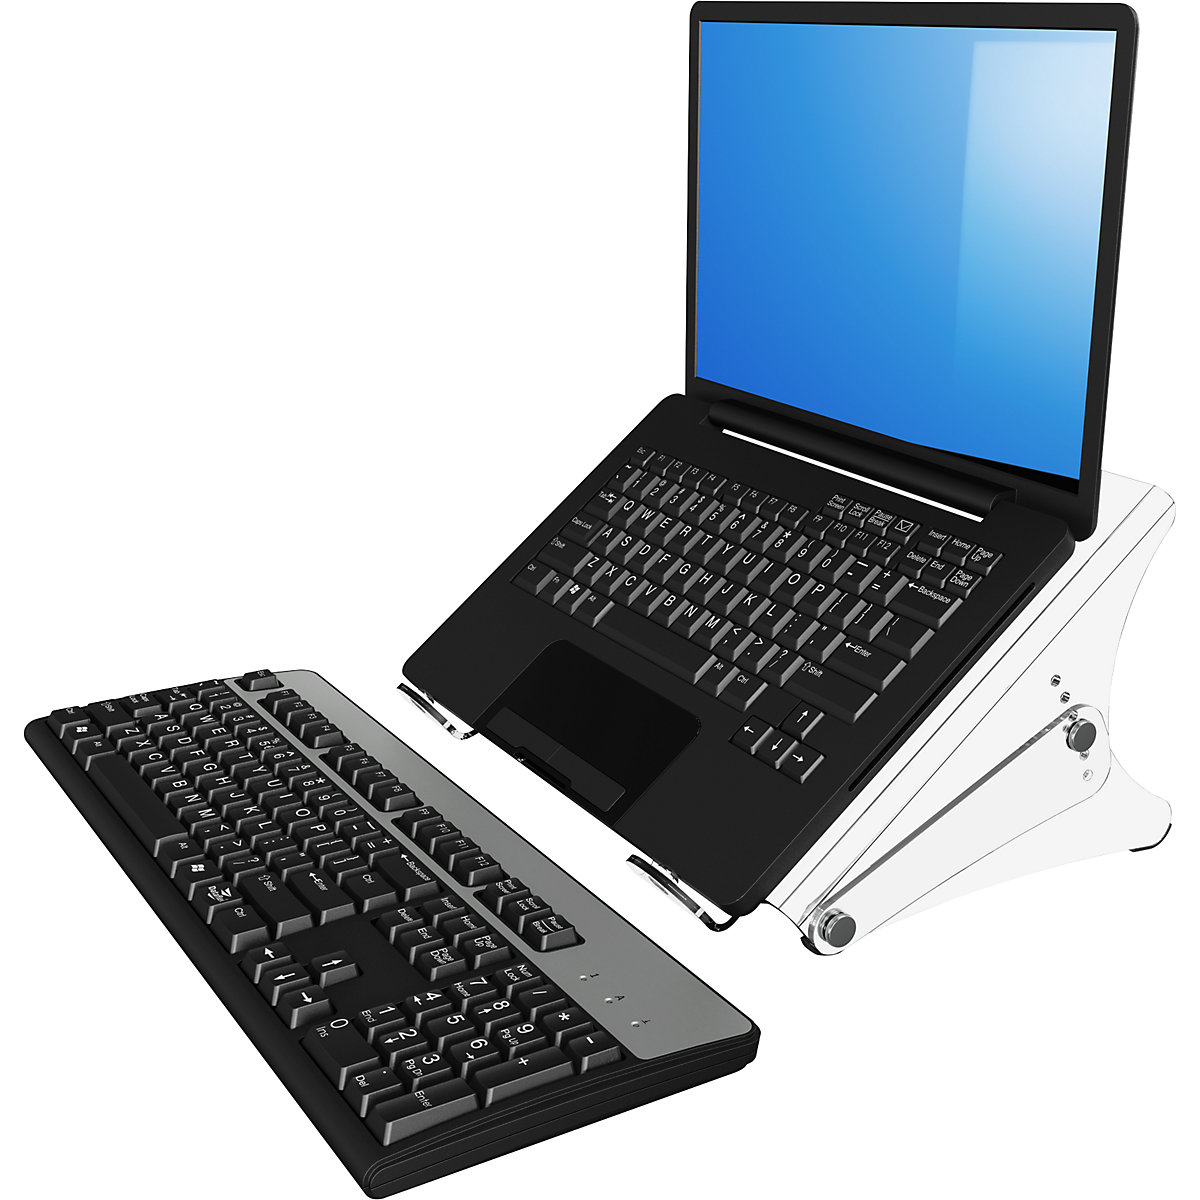 Comprar Soporte para ordenador portátil, soporte para teclado